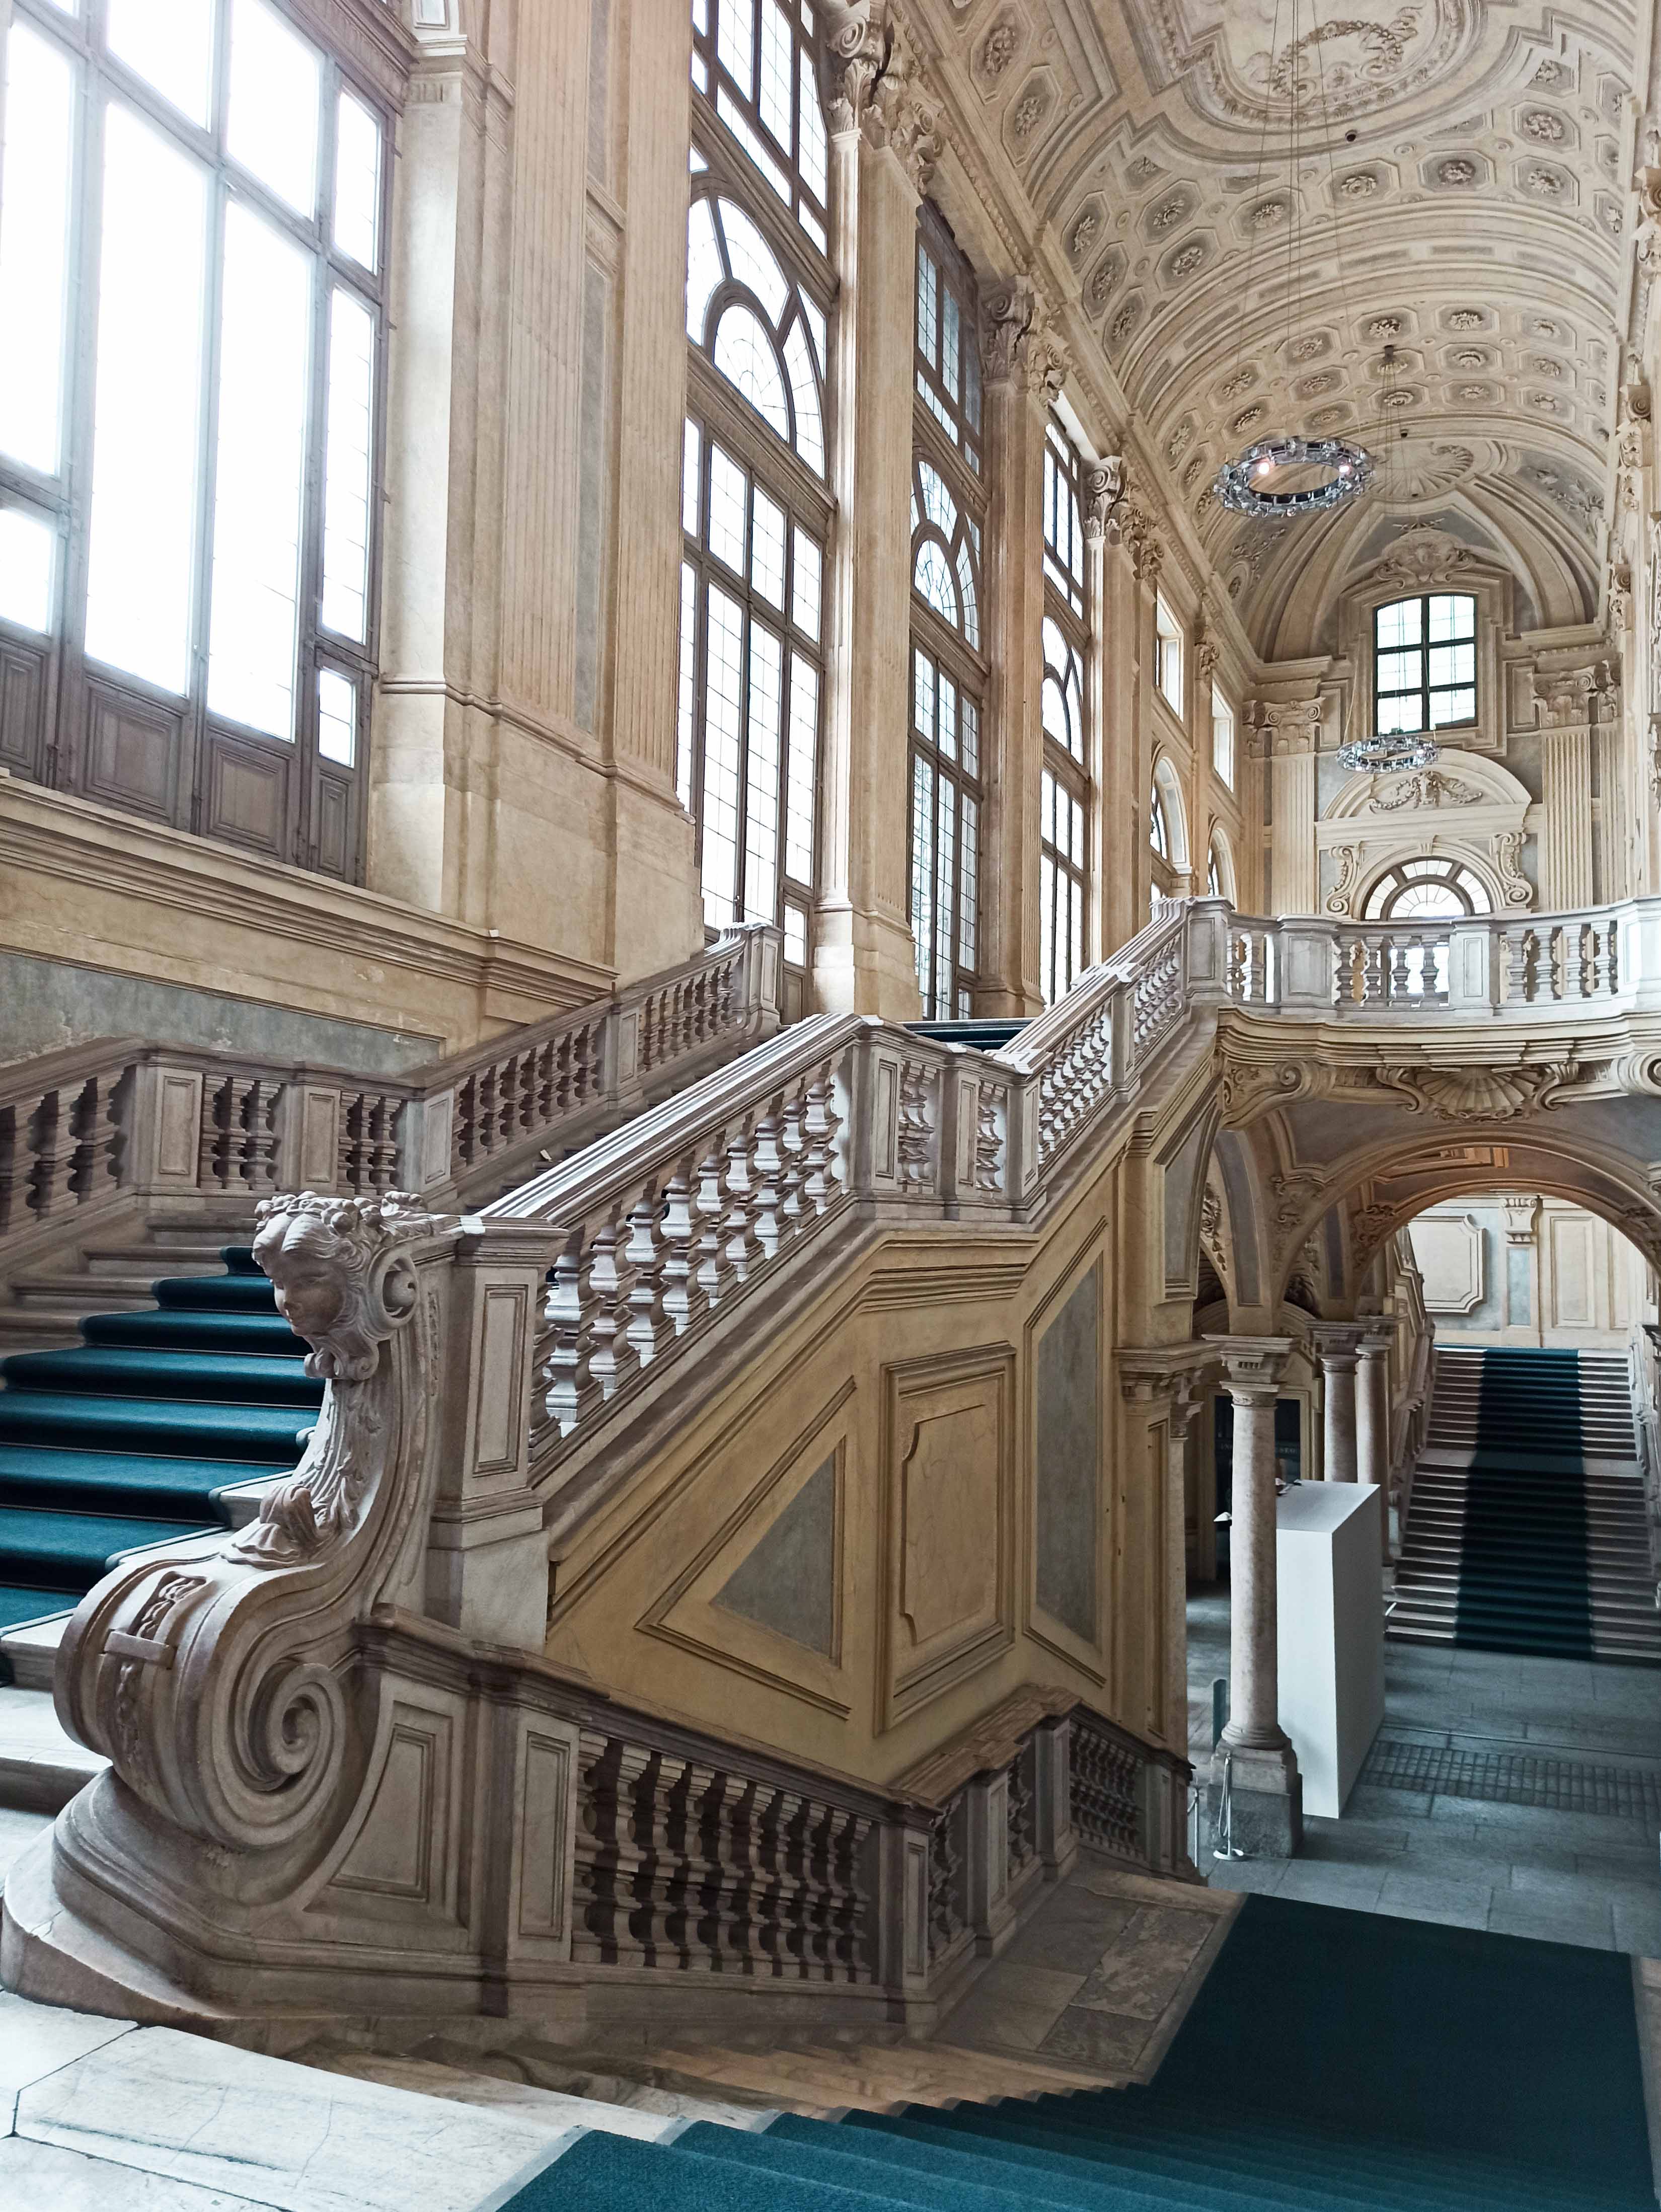 The Savoy Royal Residences Turin, Palazzo Madama